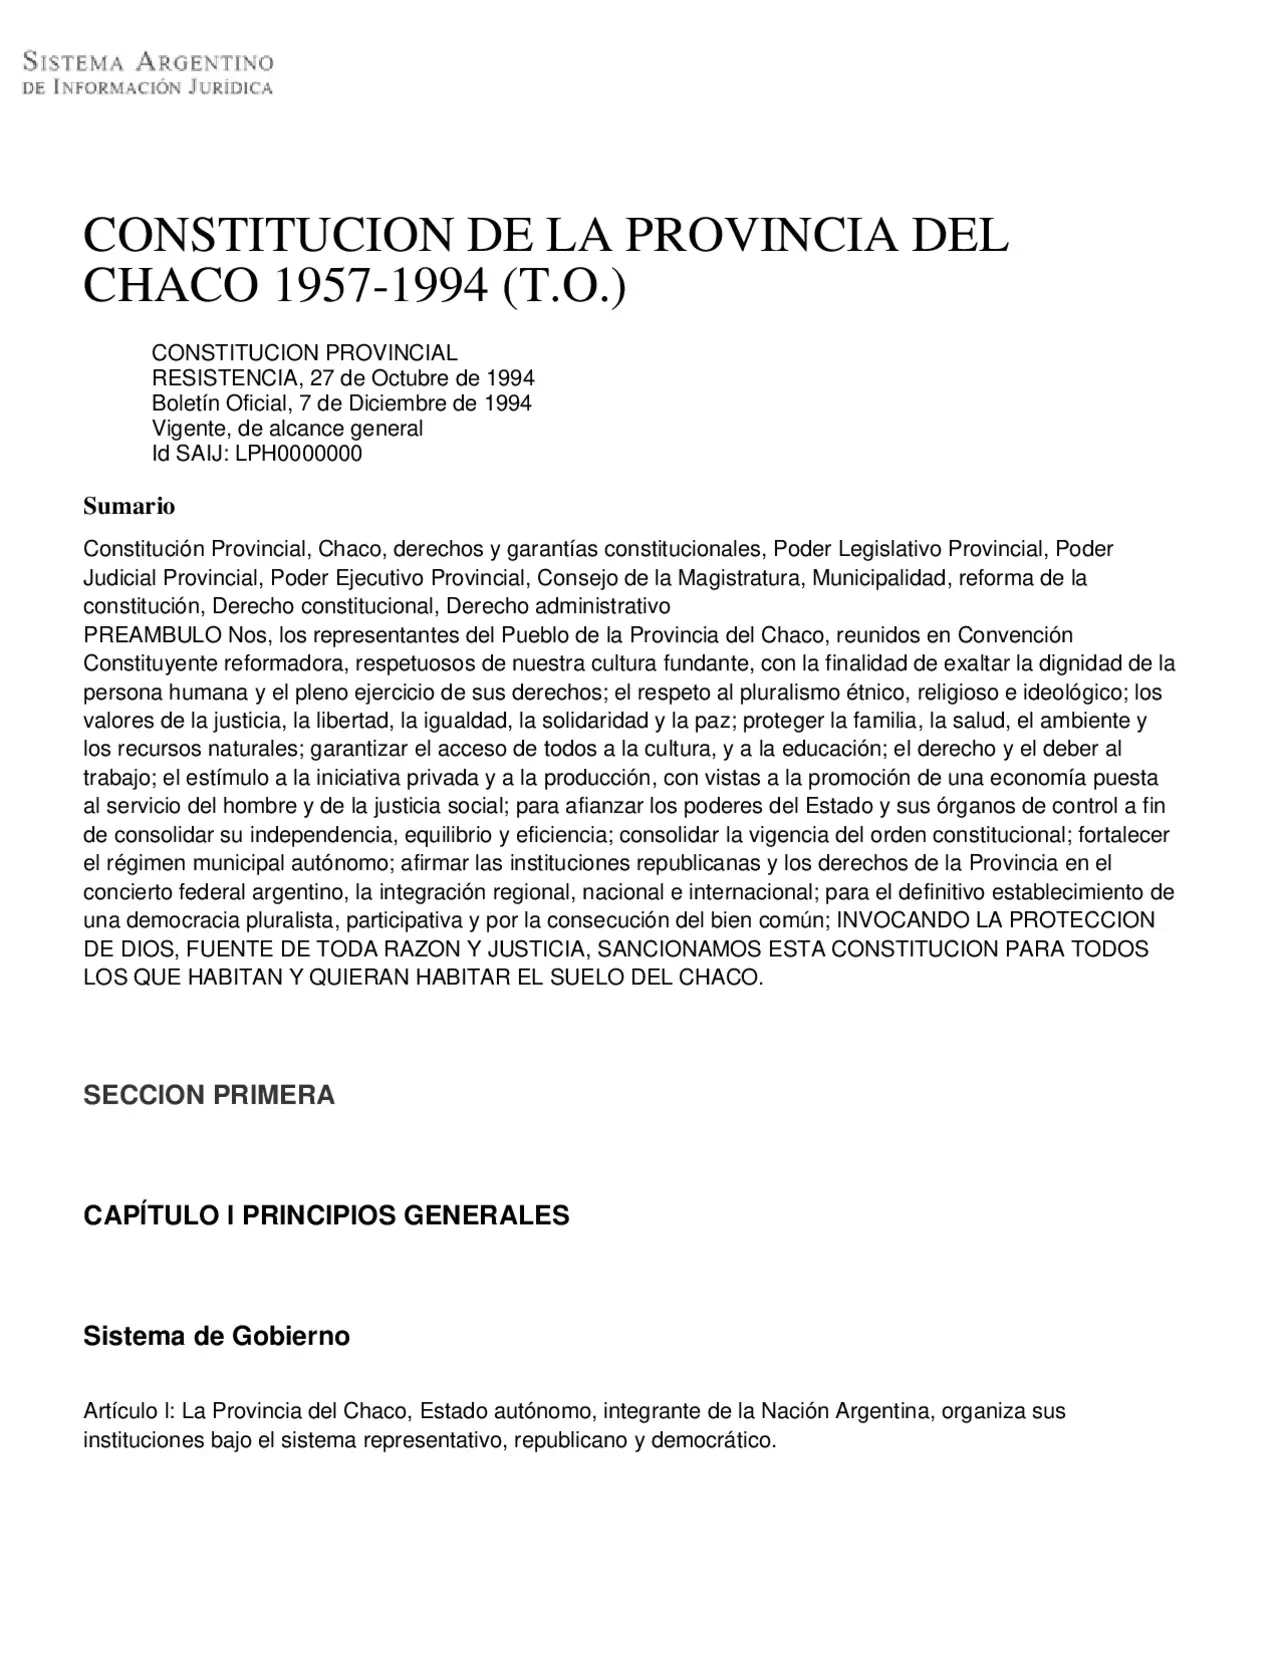 resumen de la constitucion del chaco - Cómo está compuesta la Constitución del Chaco